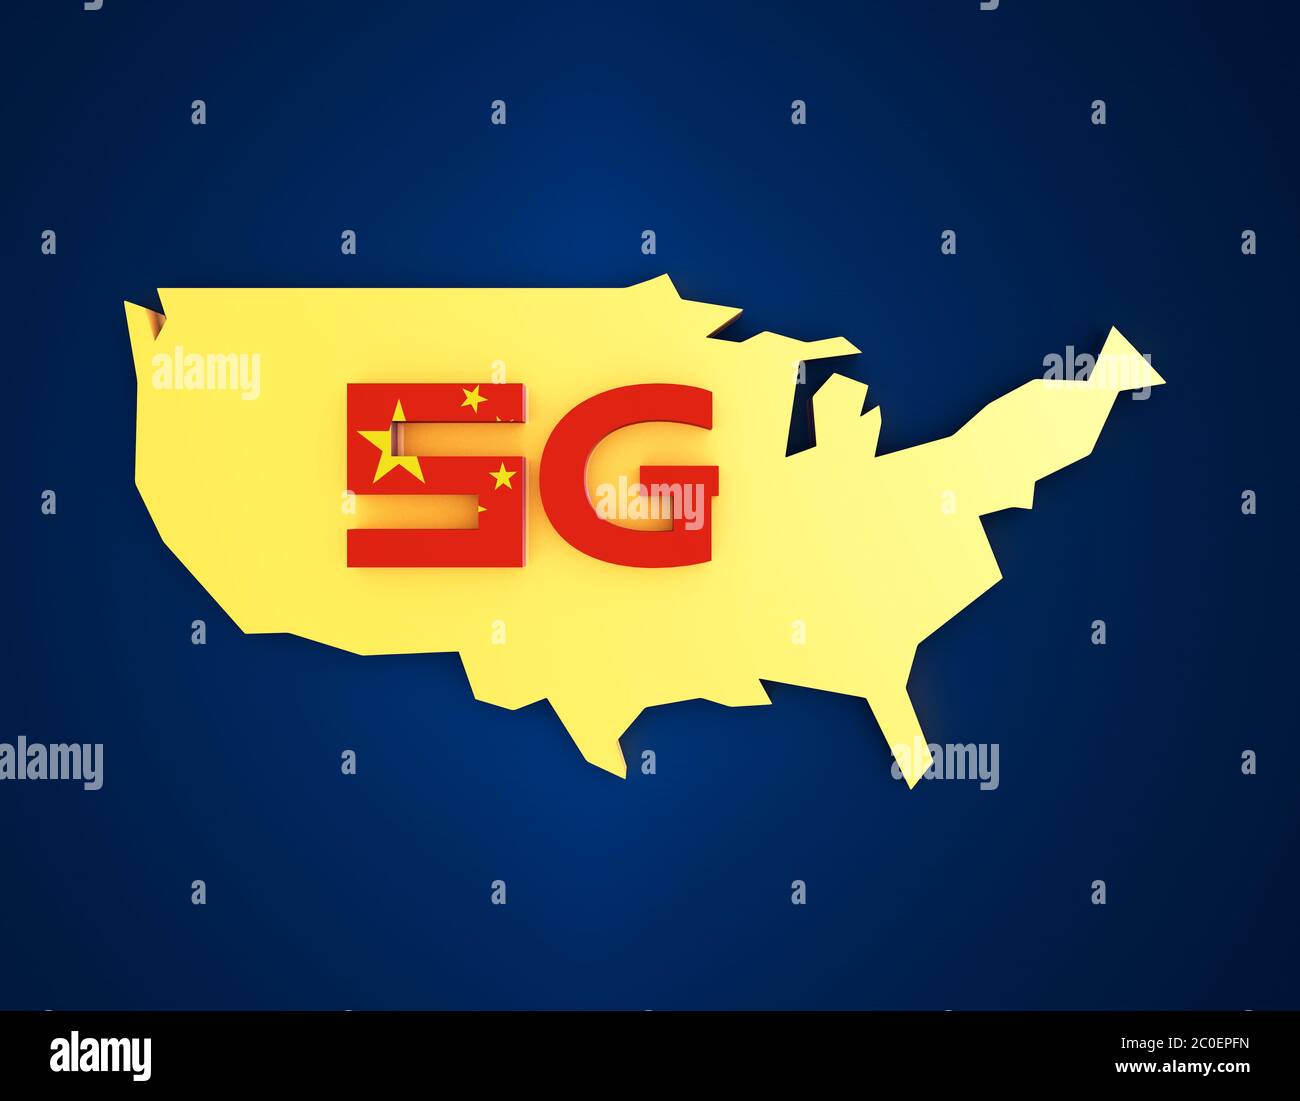 La rete 5G della Cina occupa gli Stati Uniti Foto Stock